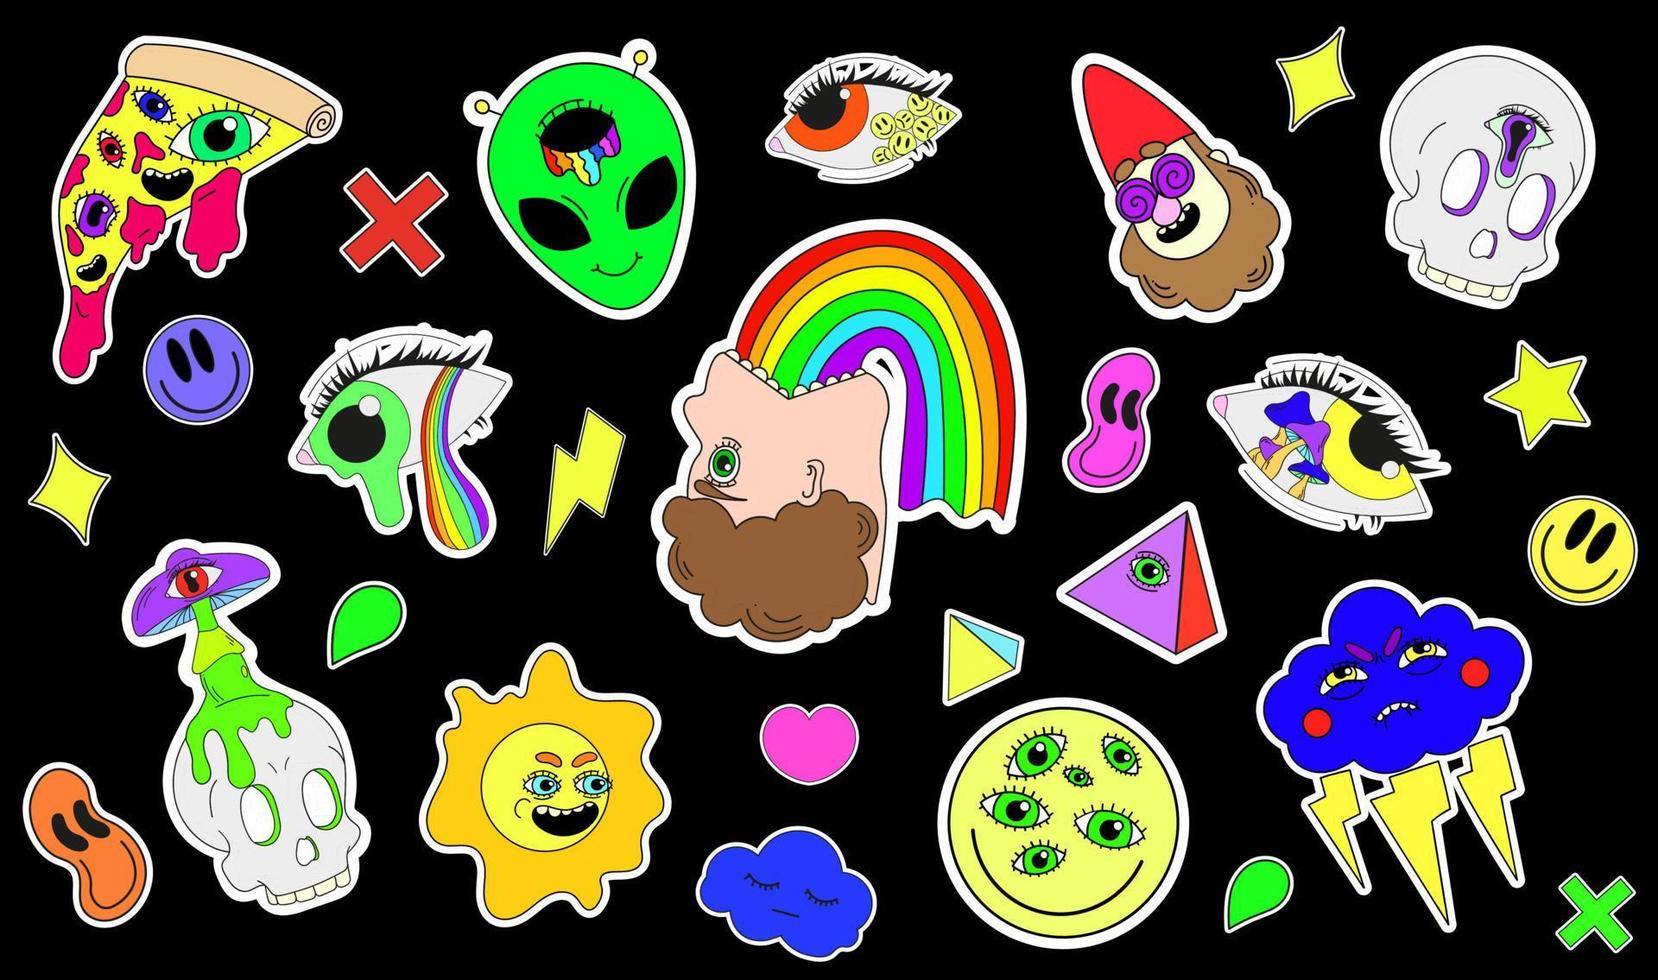 un set di adesivi psichedelici, un arcobaleno, l'illustrazione di un uomo che vomita un arcobaleno, un alieno, una pizza con gli occhi. surrealismo. vettore